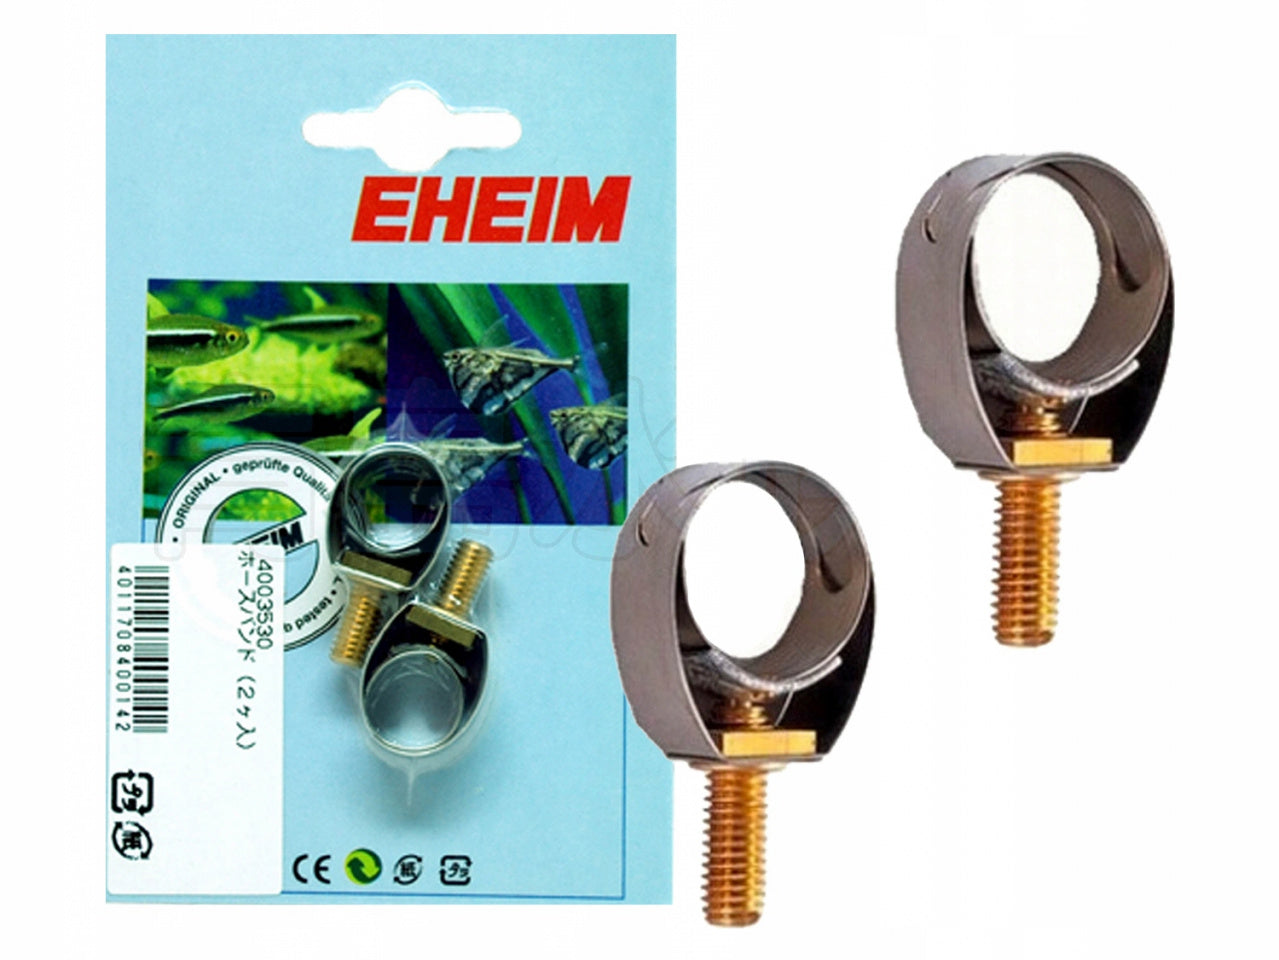 Eheim 34004530 Collar Tie Pipe for Aquarium